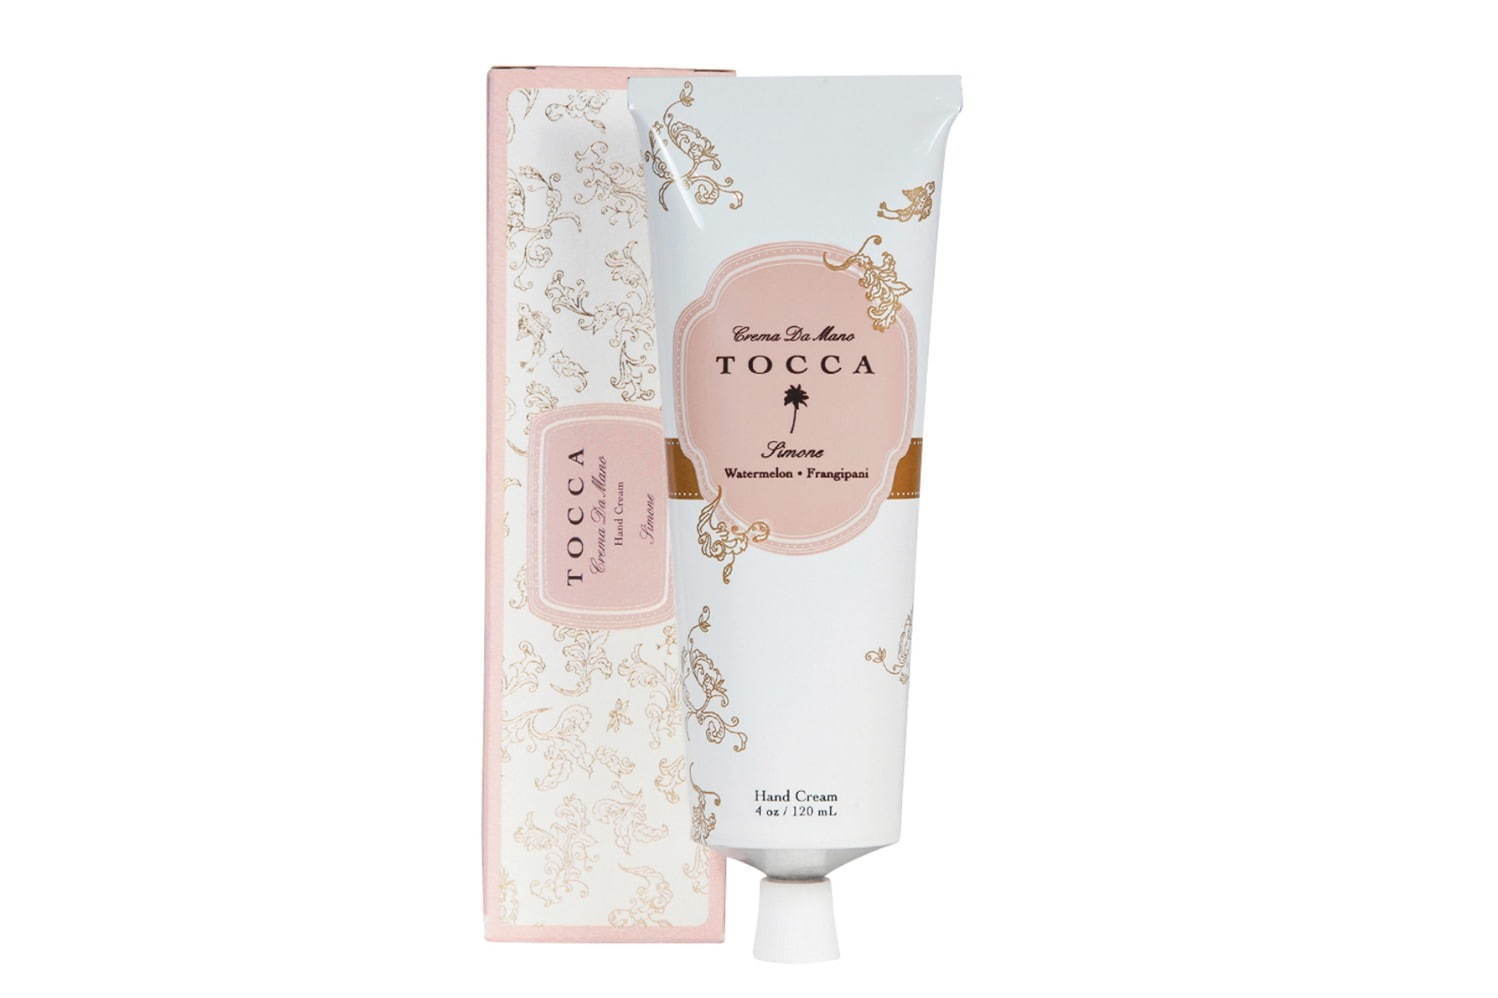 トッカ メタルチューブハンドクリーム シモネの香り 120ｍL 2,800円＋税
発売予定日：2020年5月18日(月)